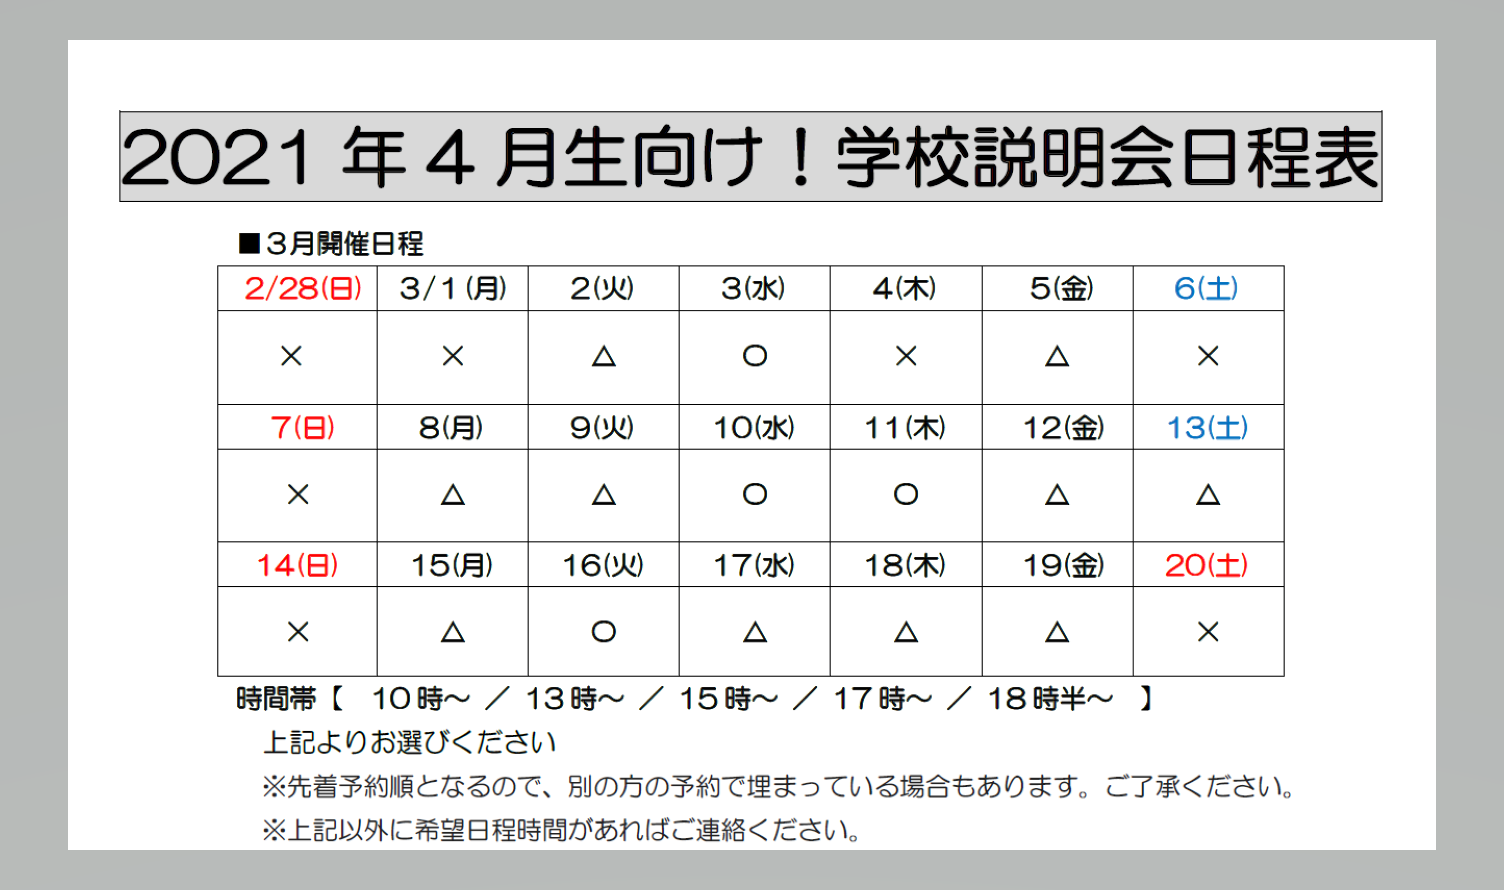 https://www.hchs.ed.jp/campus/nagoya/images/3%E6%9C%88%E4%BA%88%E5%AE%9A%E8%A1%A8%E3%80%80%E5%90%8D%E5%8F%A4%E5%B1%8B.png